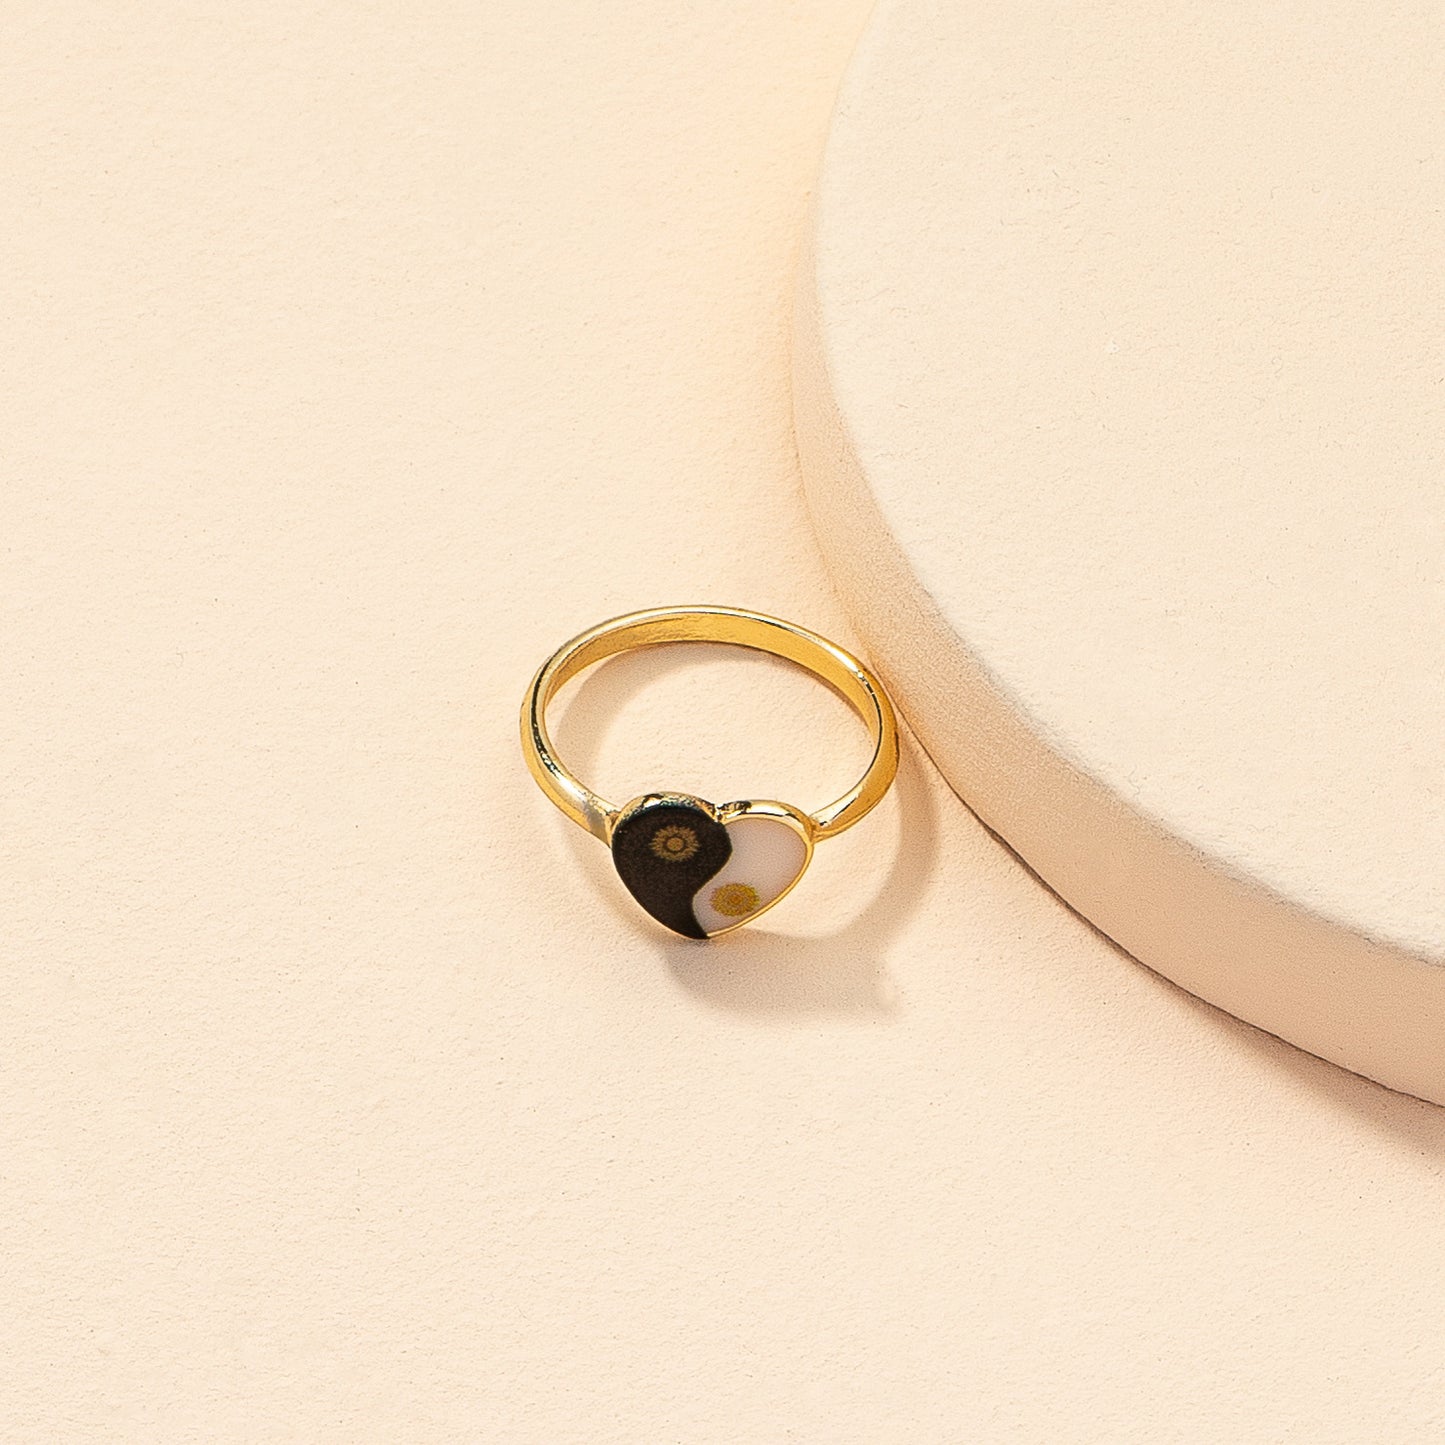 Europe & America's Favorite Heart Print Ring: Gold Geometric Cross-Border Instagram Ring for Women